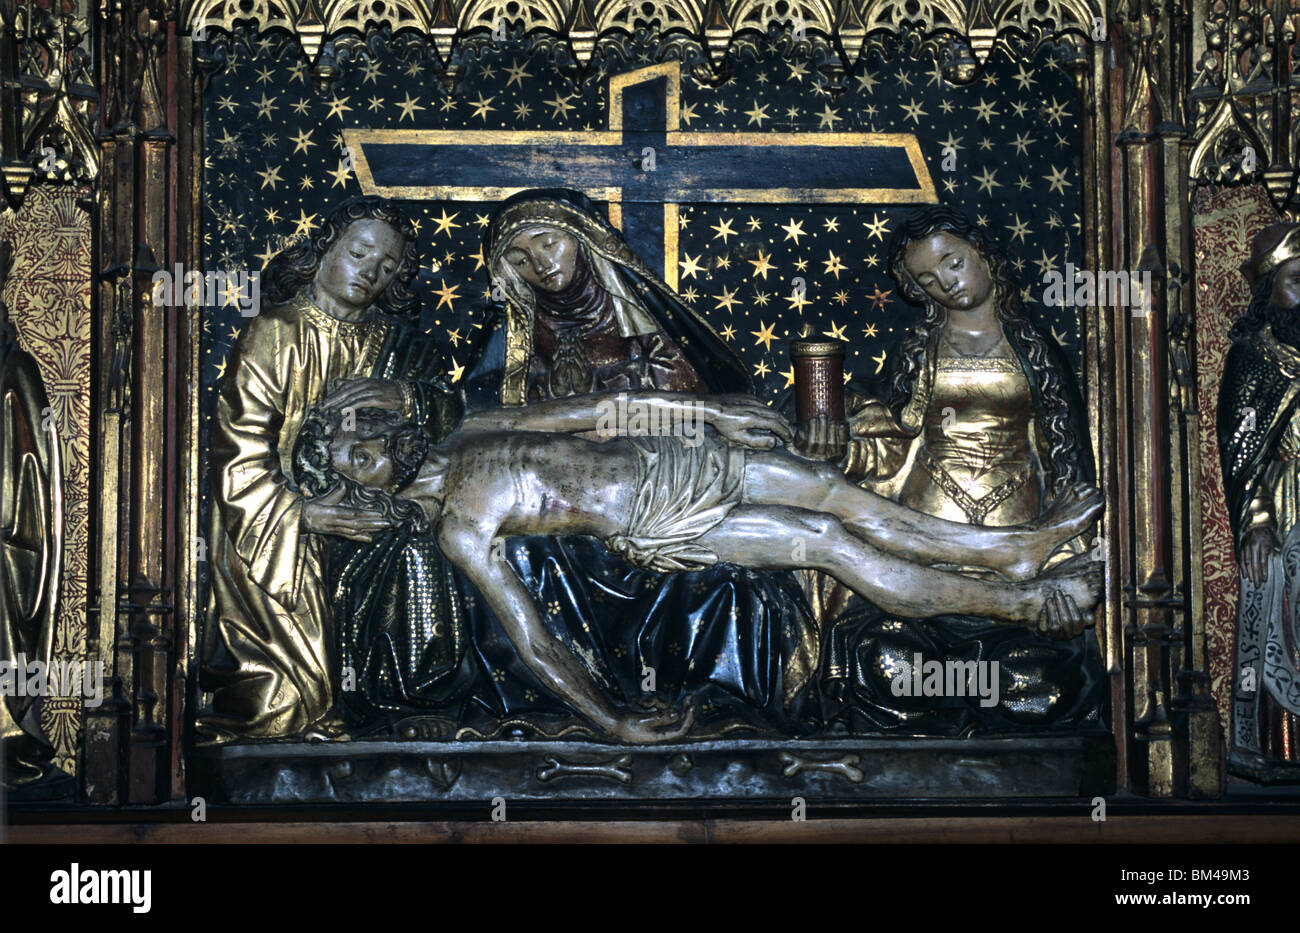 Three Marys & Christ on Death Bed, gotisches c15. Holzaltar, Kirche des Heiligen oder Heiligen Jacques, Perpignan, Languedoc Roussillon, Frankreich Stockfoto